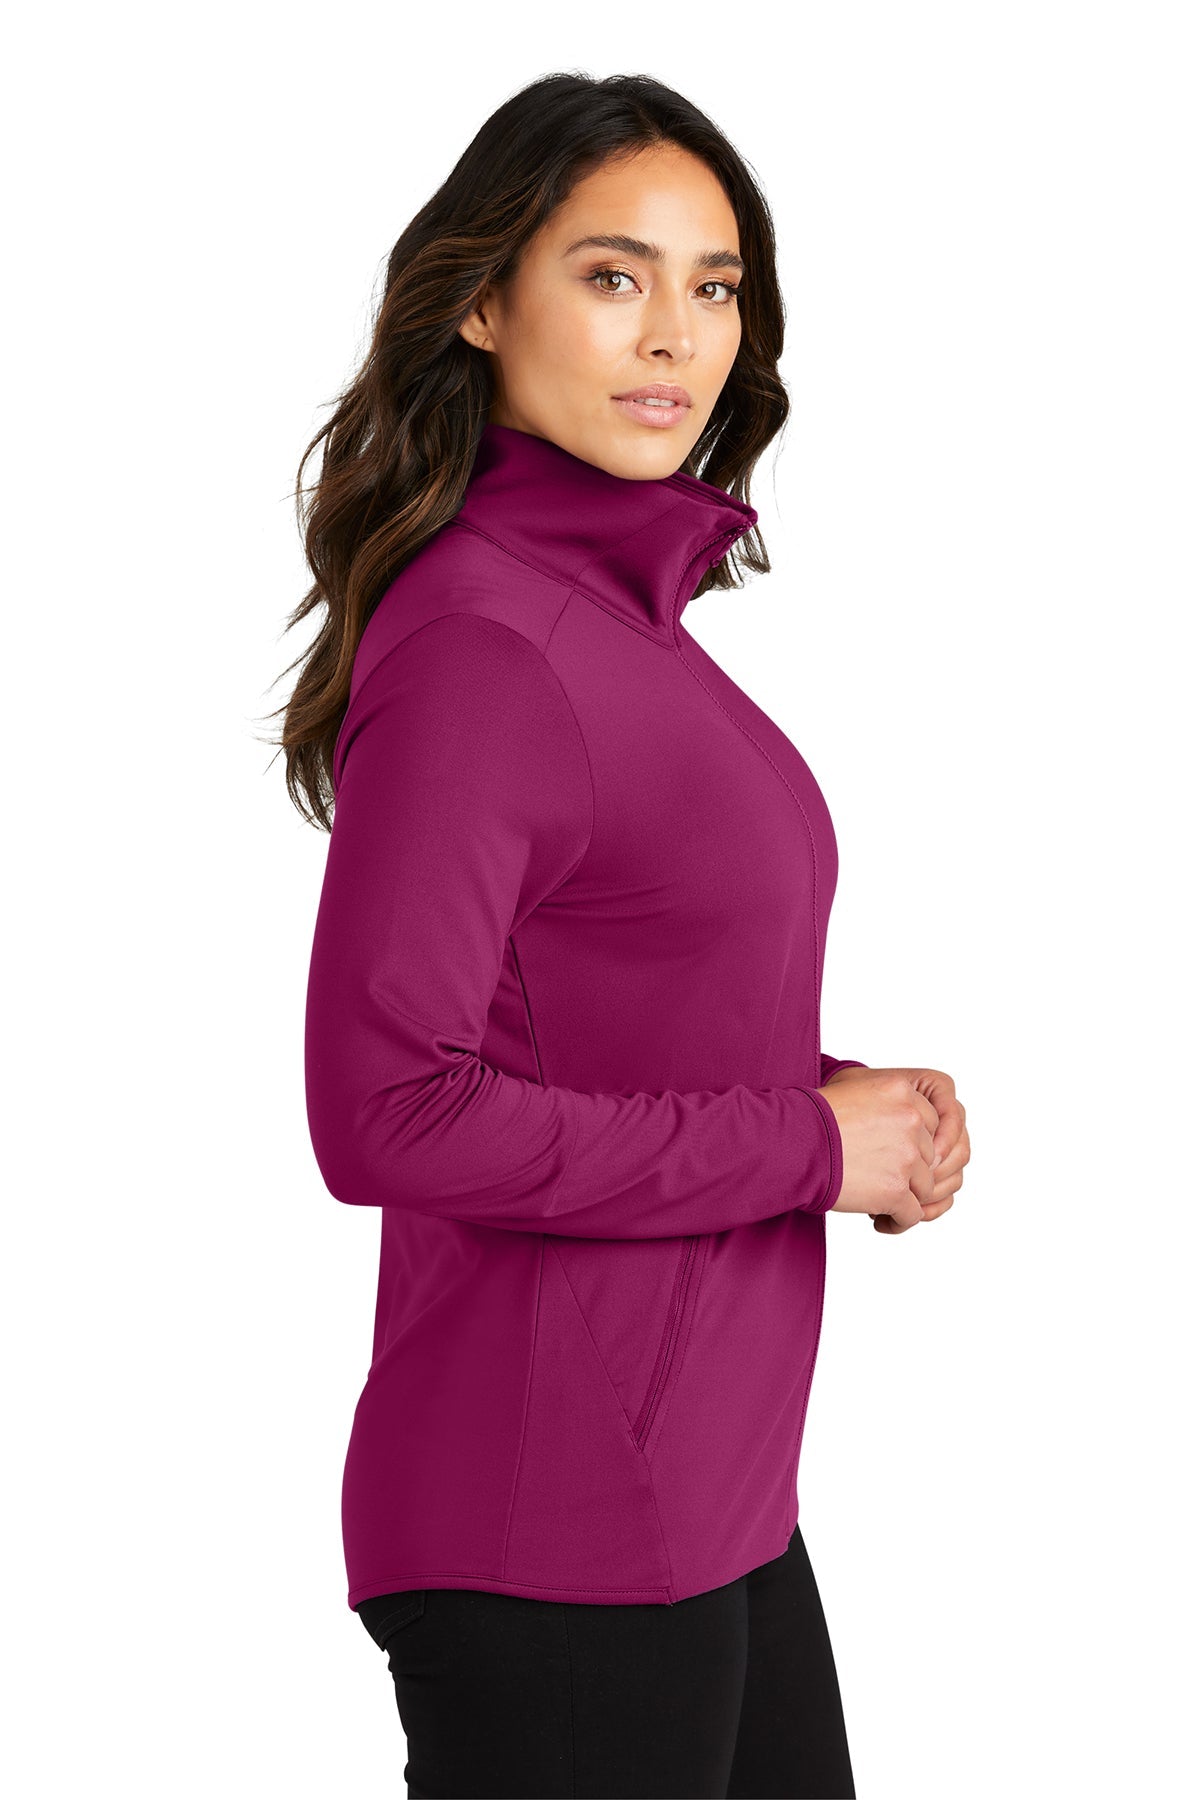 LK595 Port Authority® Ladies Accord Stretch Fleece Full-Zip